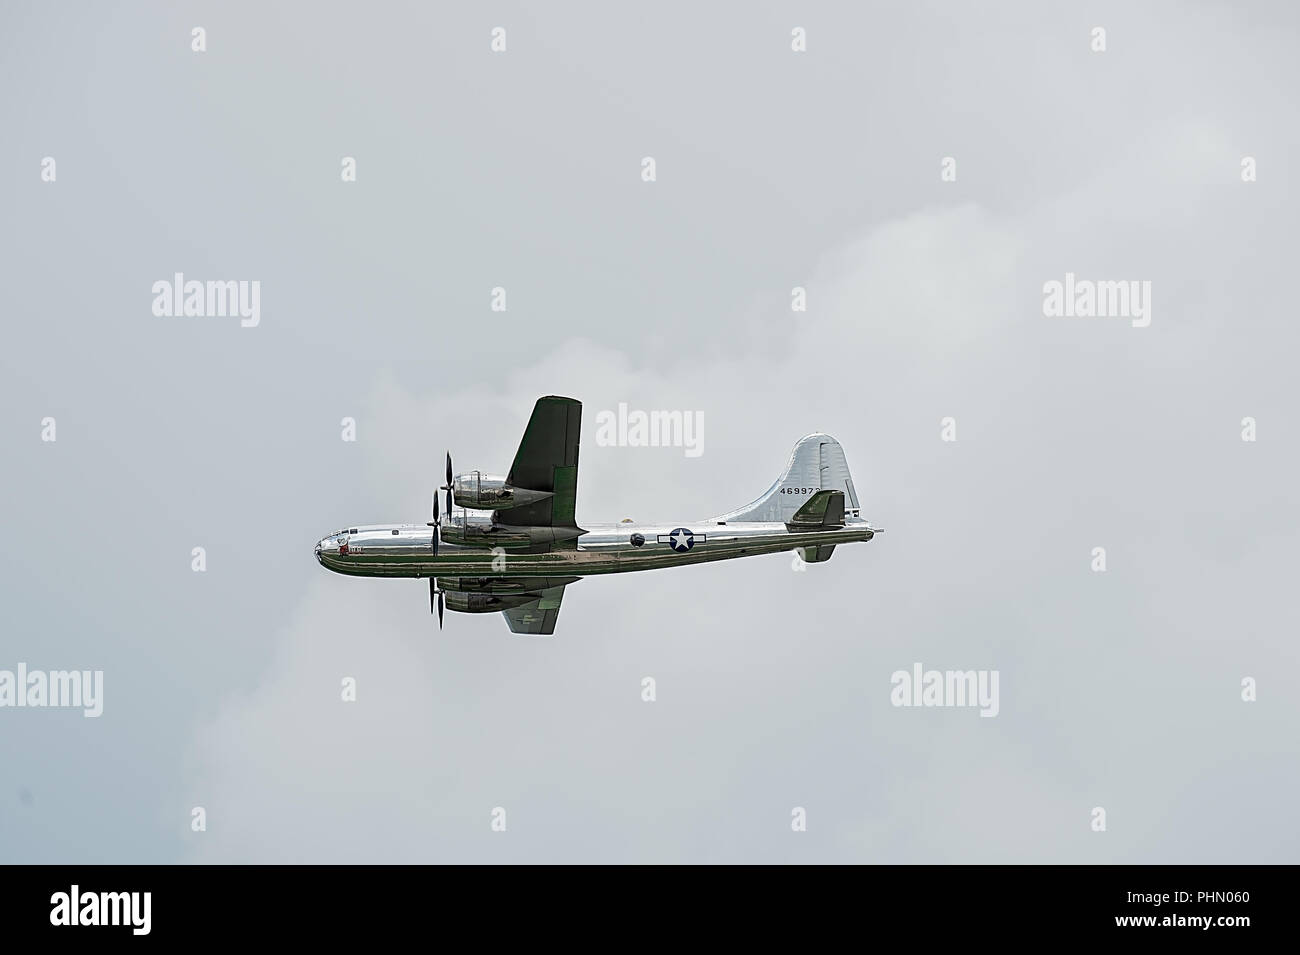 Oshkosh, WI - 28 Luglio 2018: un B-29 bombardiere Superfortress battenti intorno, demostrating potenza da oltre 60 anni fa. Foto Stock